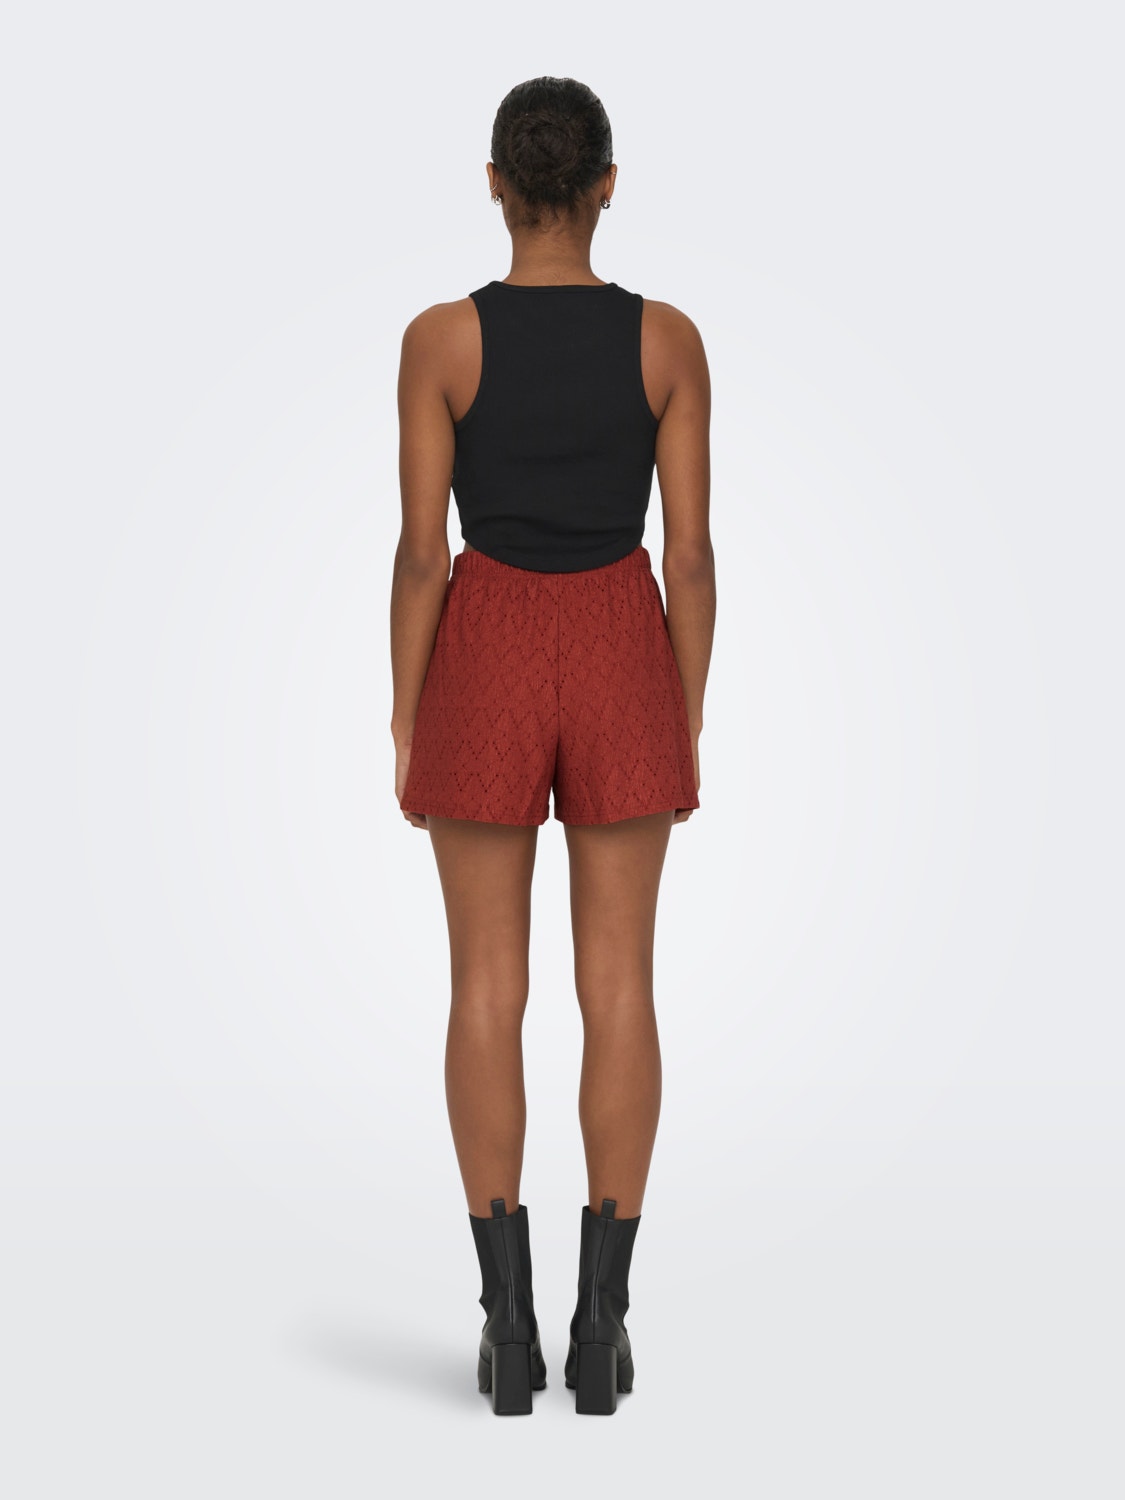 ONLY Shorts Regular Fit Vita media -Cinnabar - 15294178